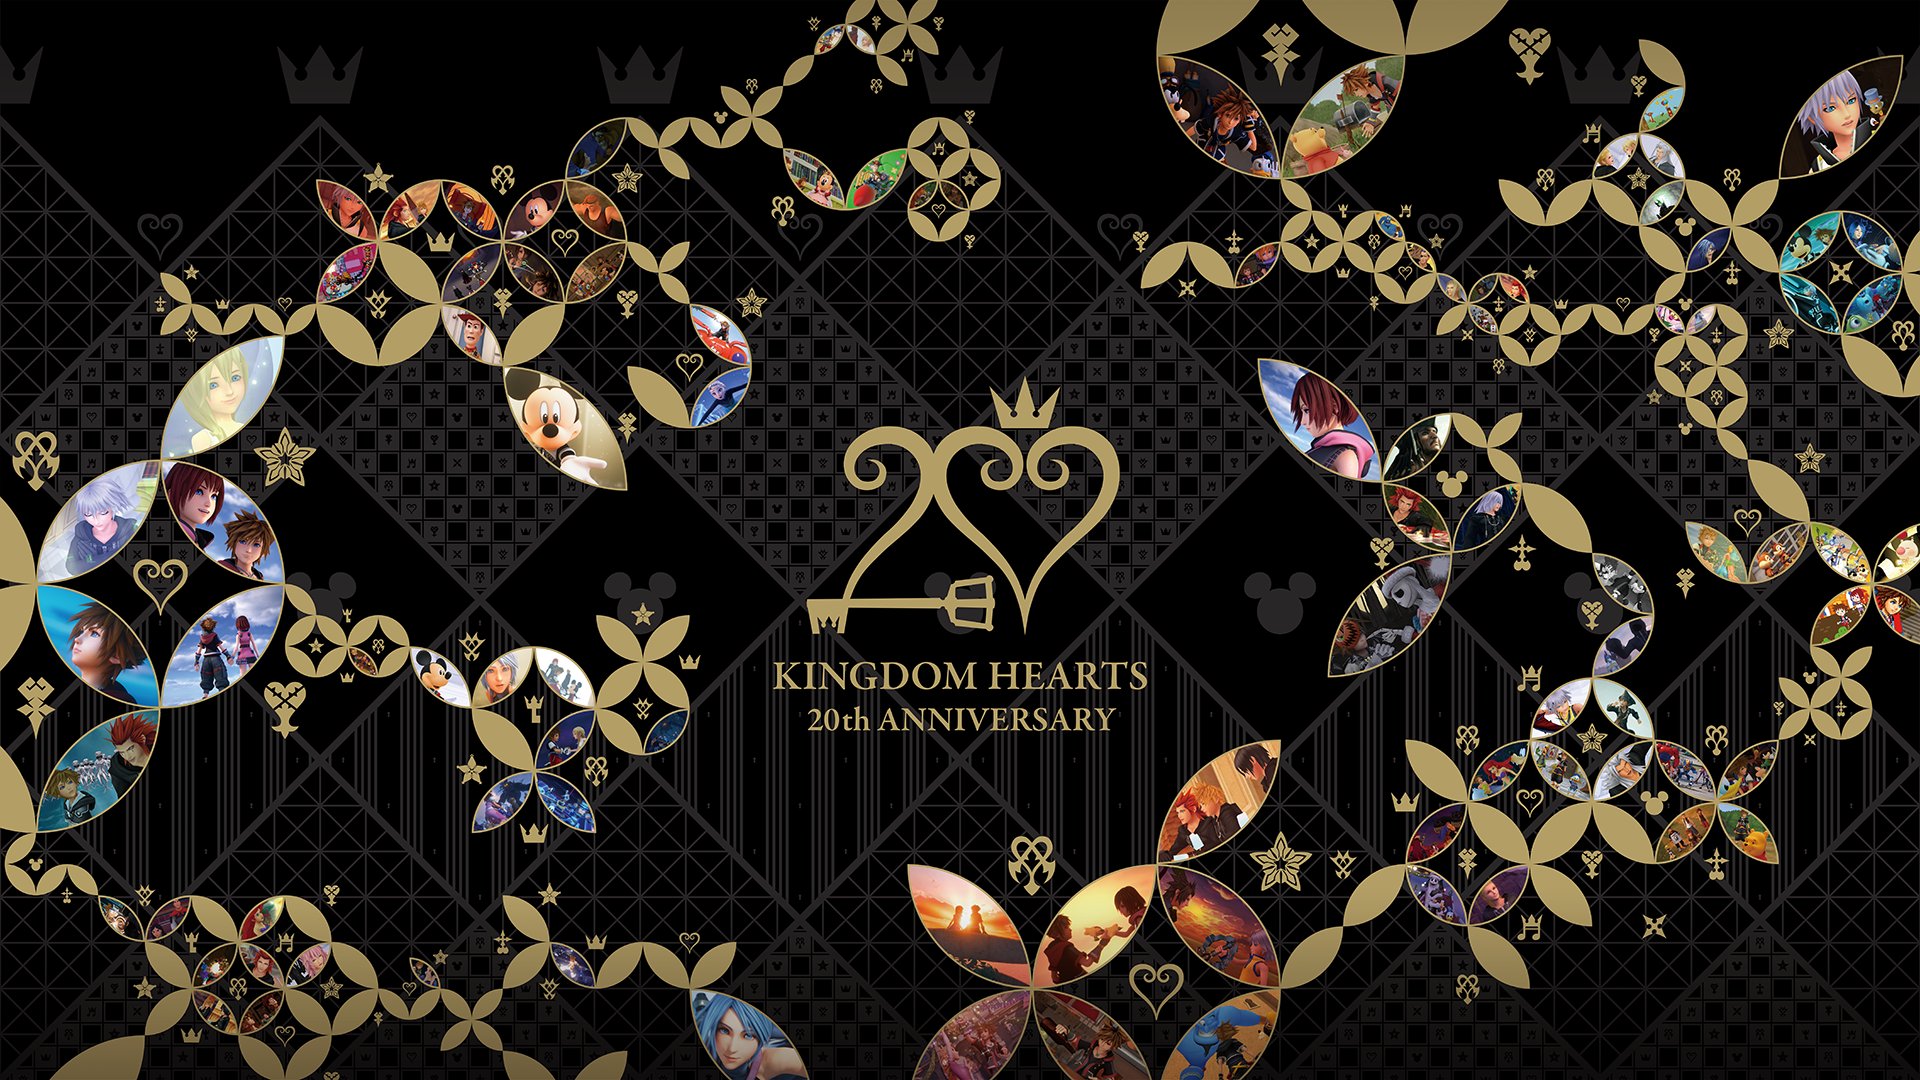 PlayStation 2 - Kingdom Hearts 2 - Hades - The Models Resource